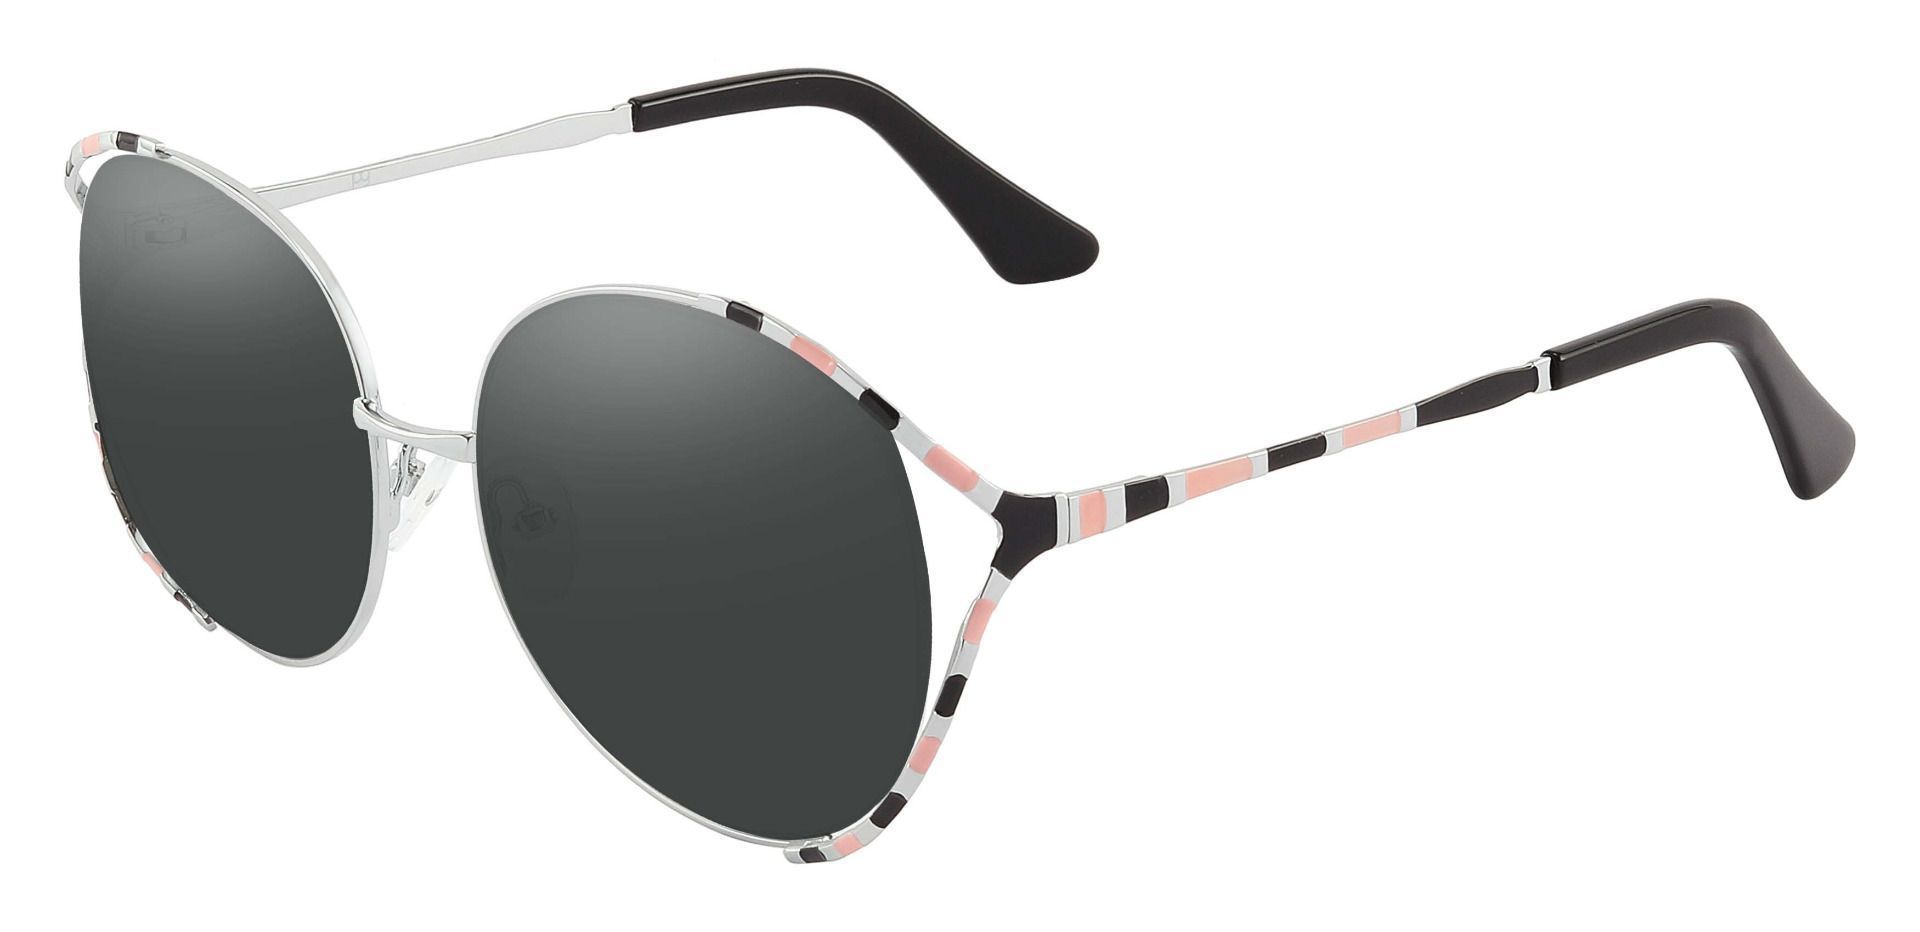 Dorothy Oval Progressive Sunglasses - Black Frame With Gray Lenses